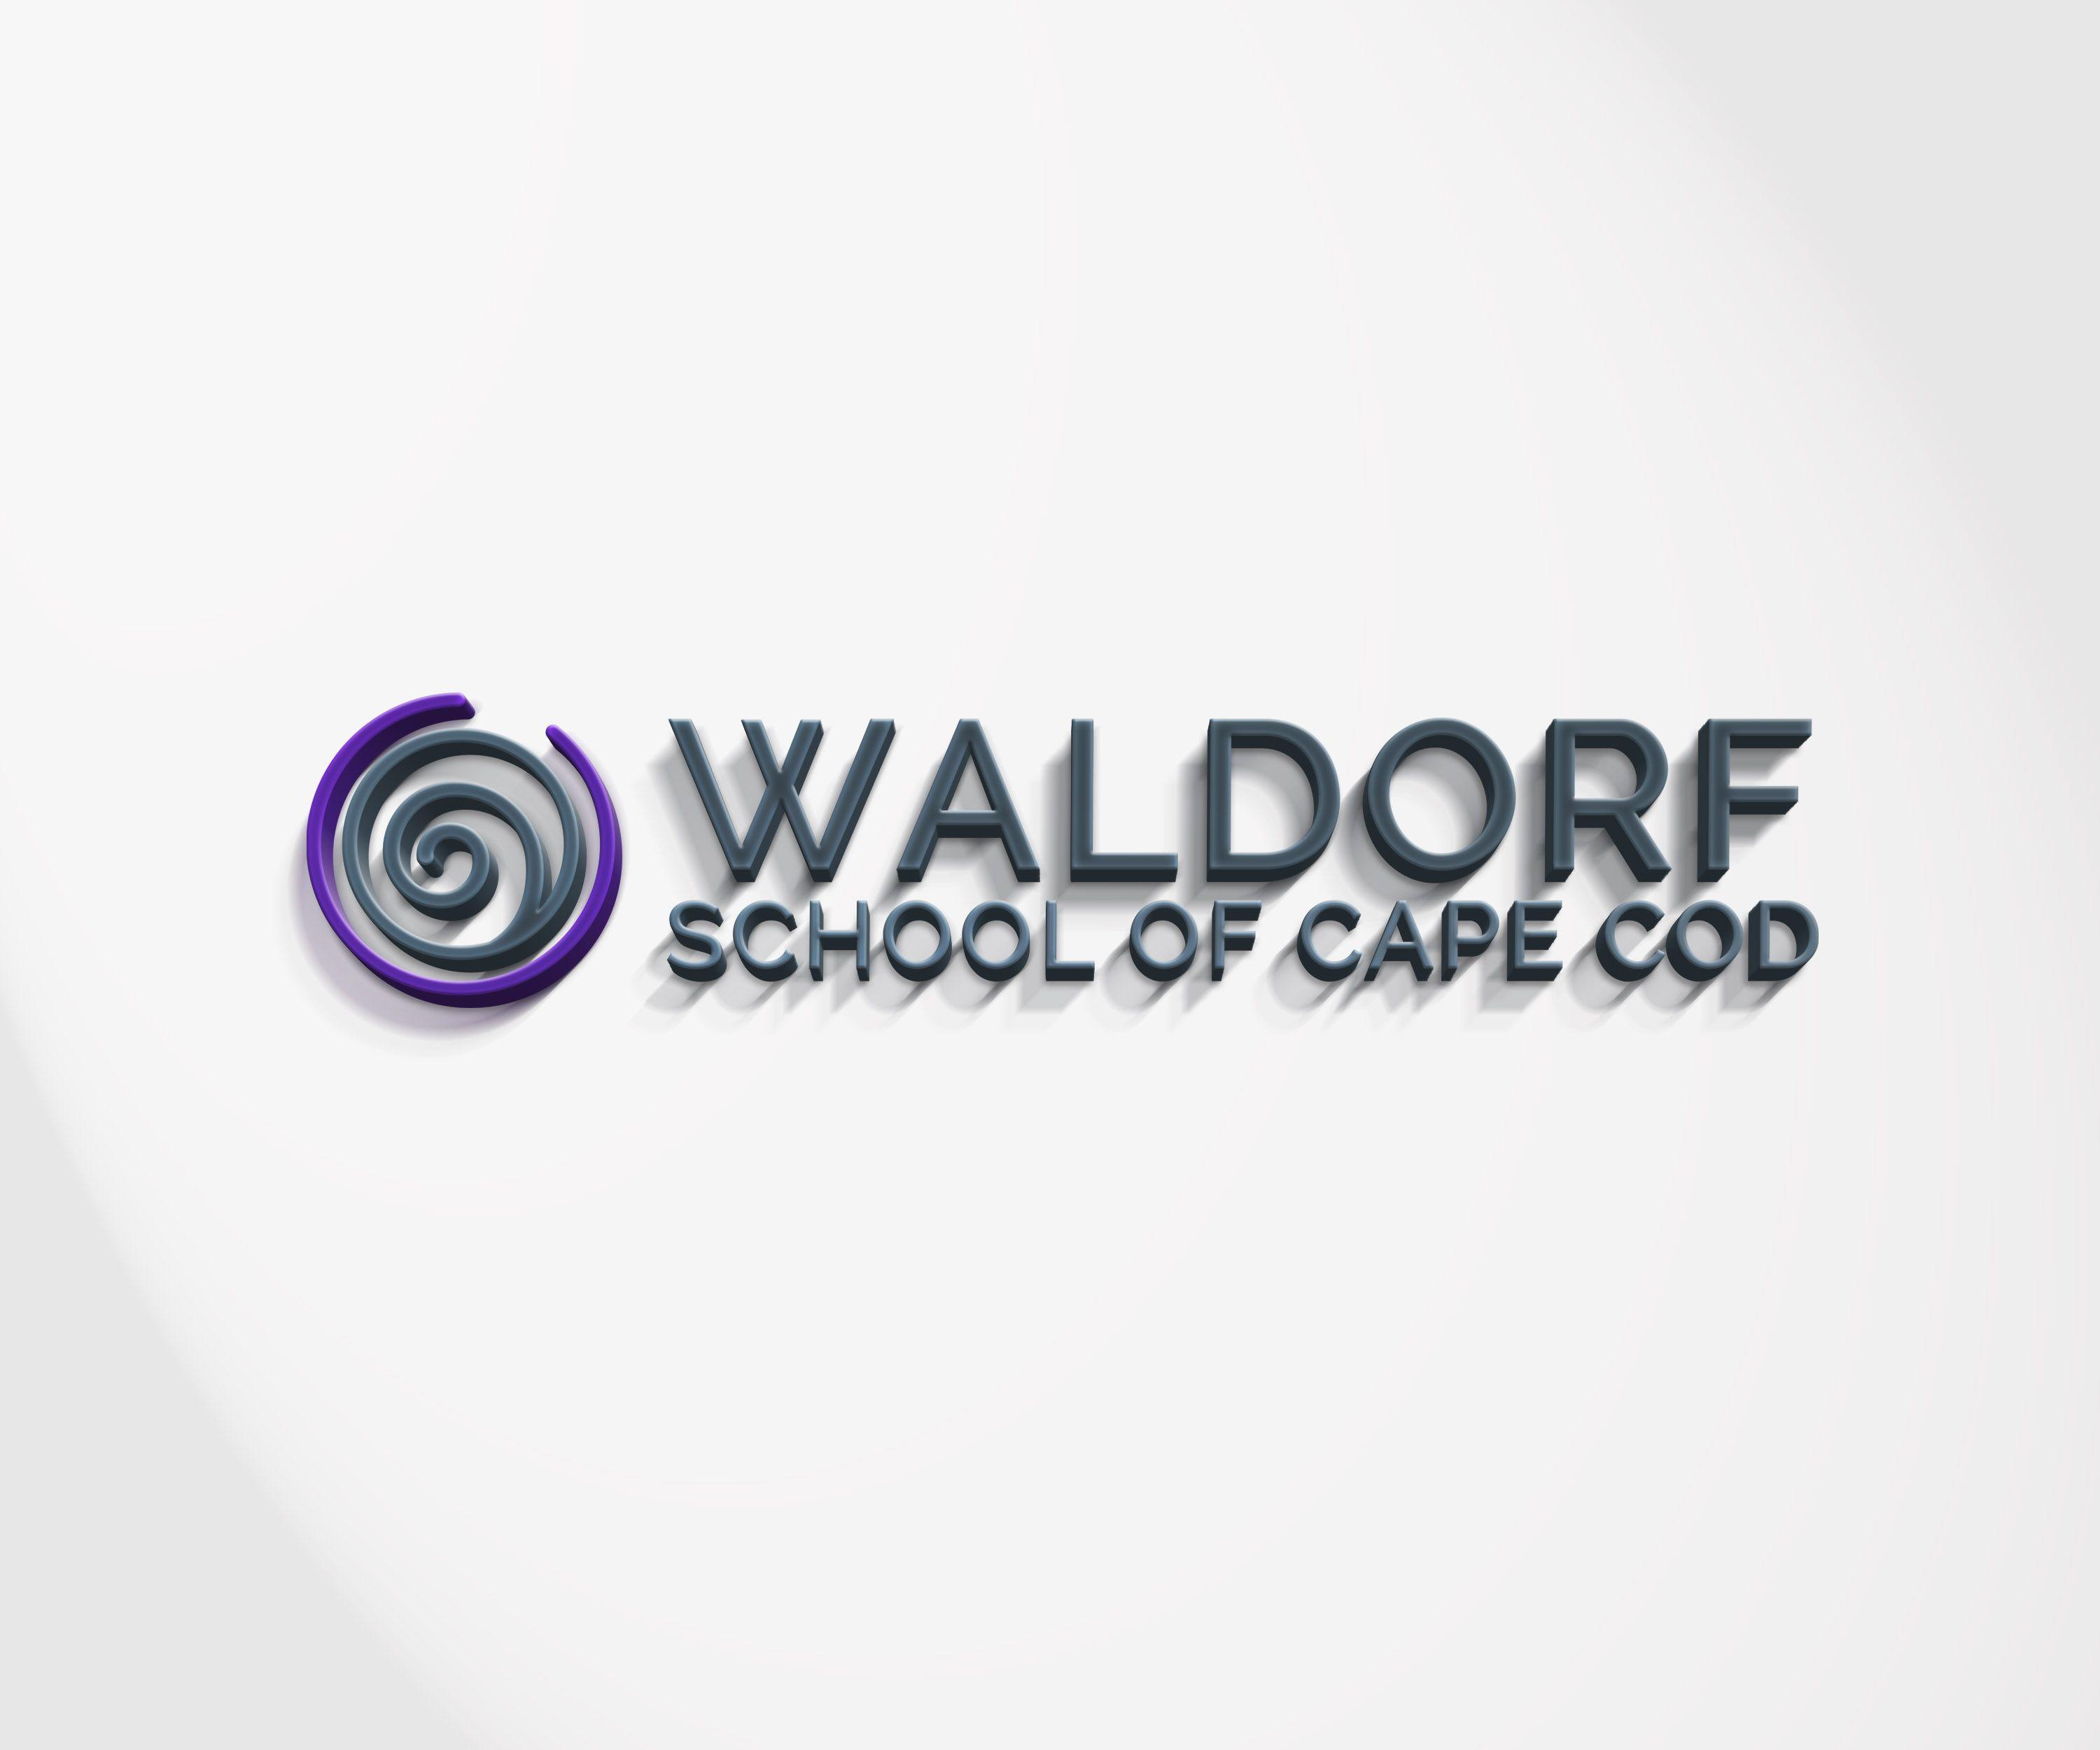 Waldorf Logo - Modern, Colorful, School Logo Design for Waldorf School of Cape Cod ...